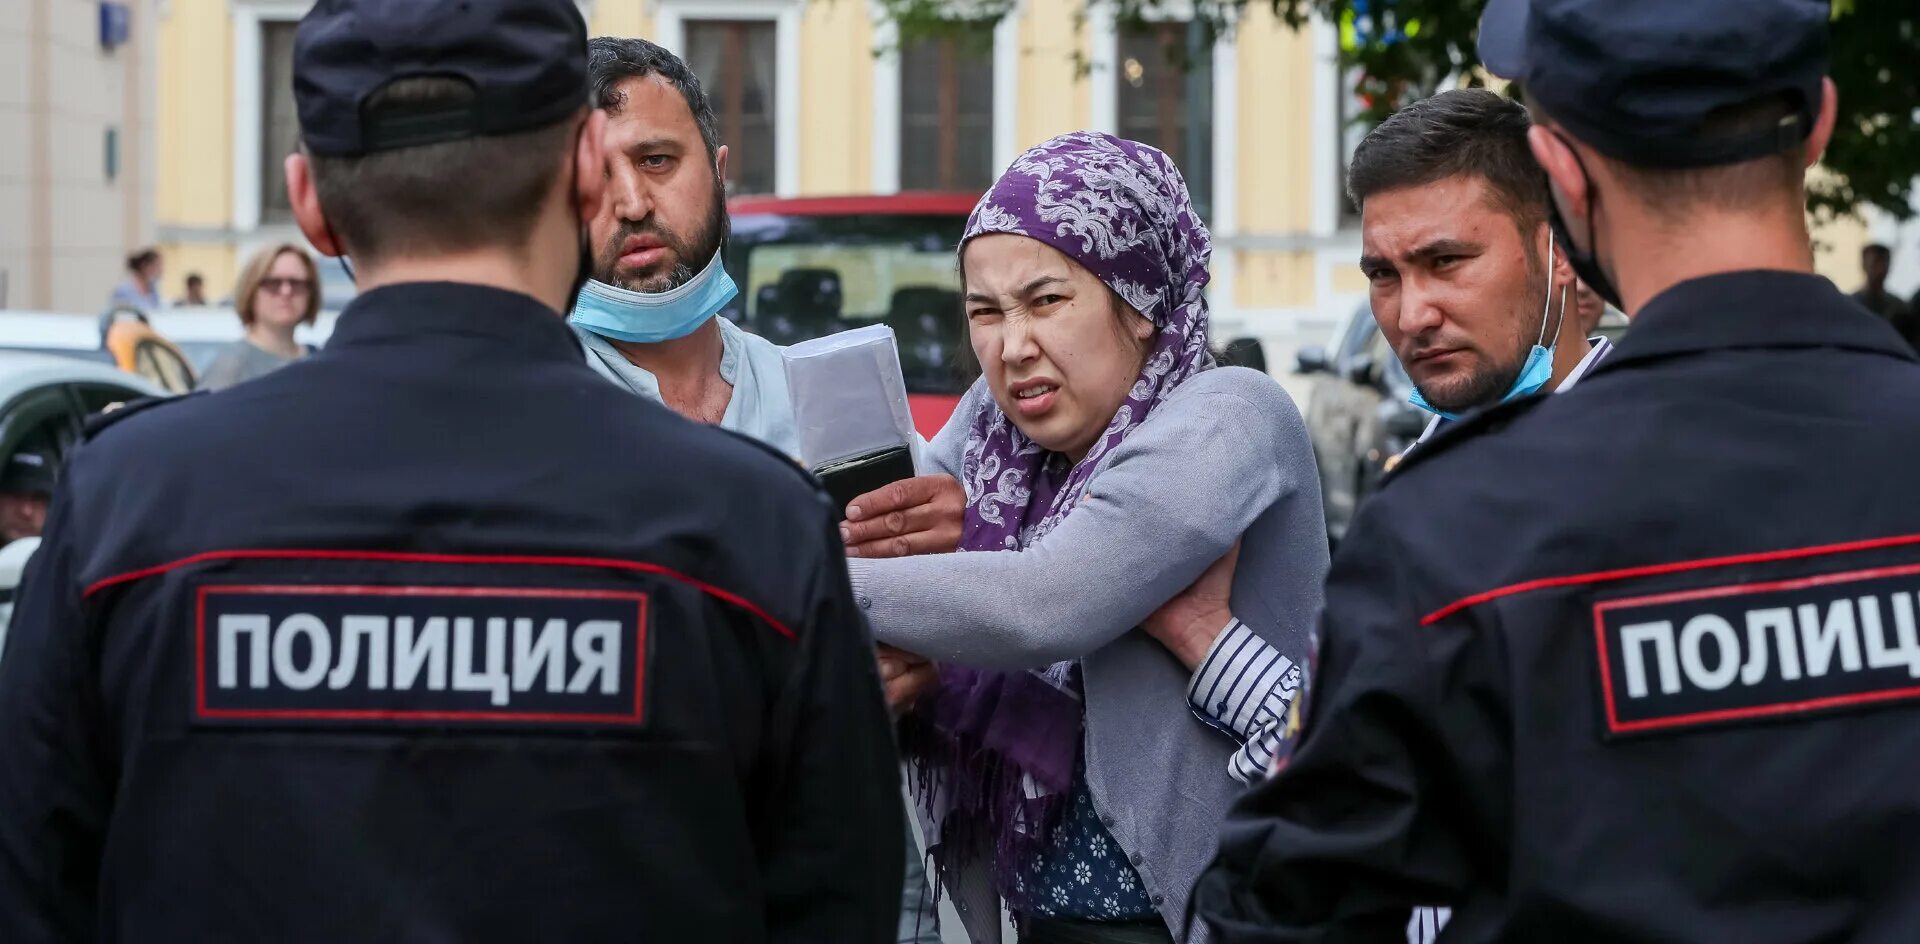 Мигранты в Москве. Таджикские мигранты. Таджики мигранты в Москве. Мигранты и полиция.